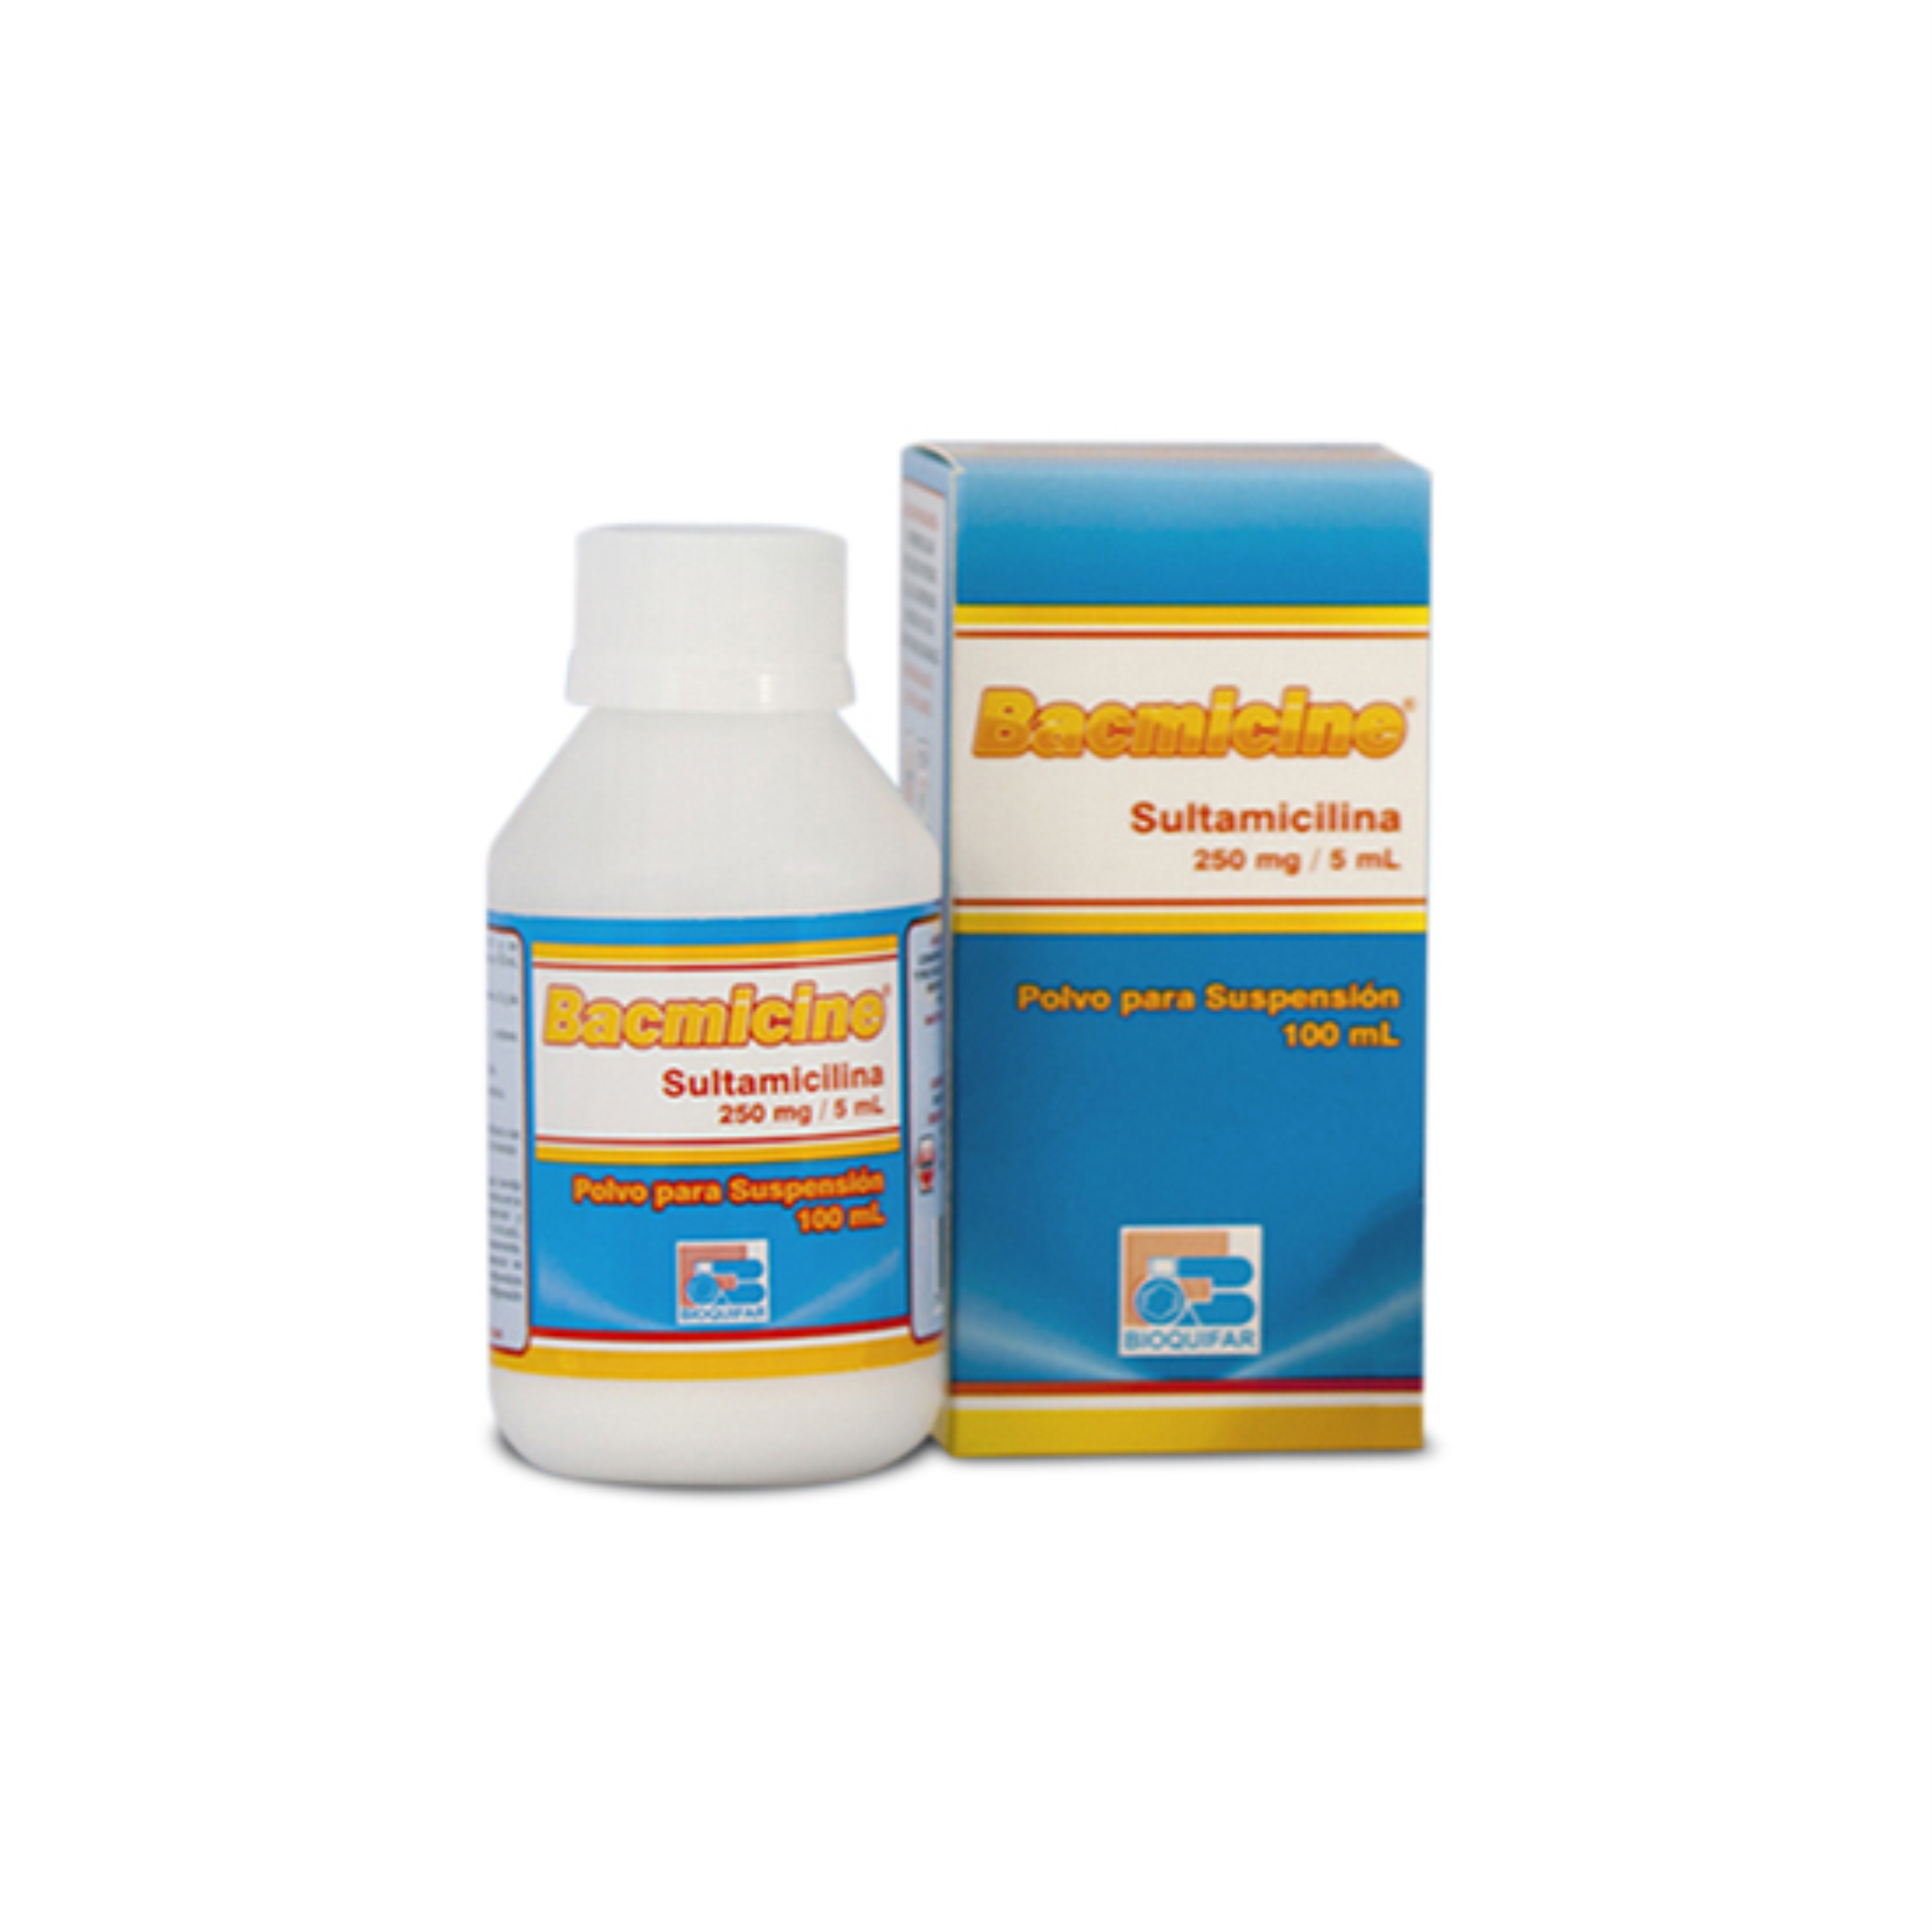 Bacmicine 250 mg / 5 mL Polvo para suspensión 100 mL